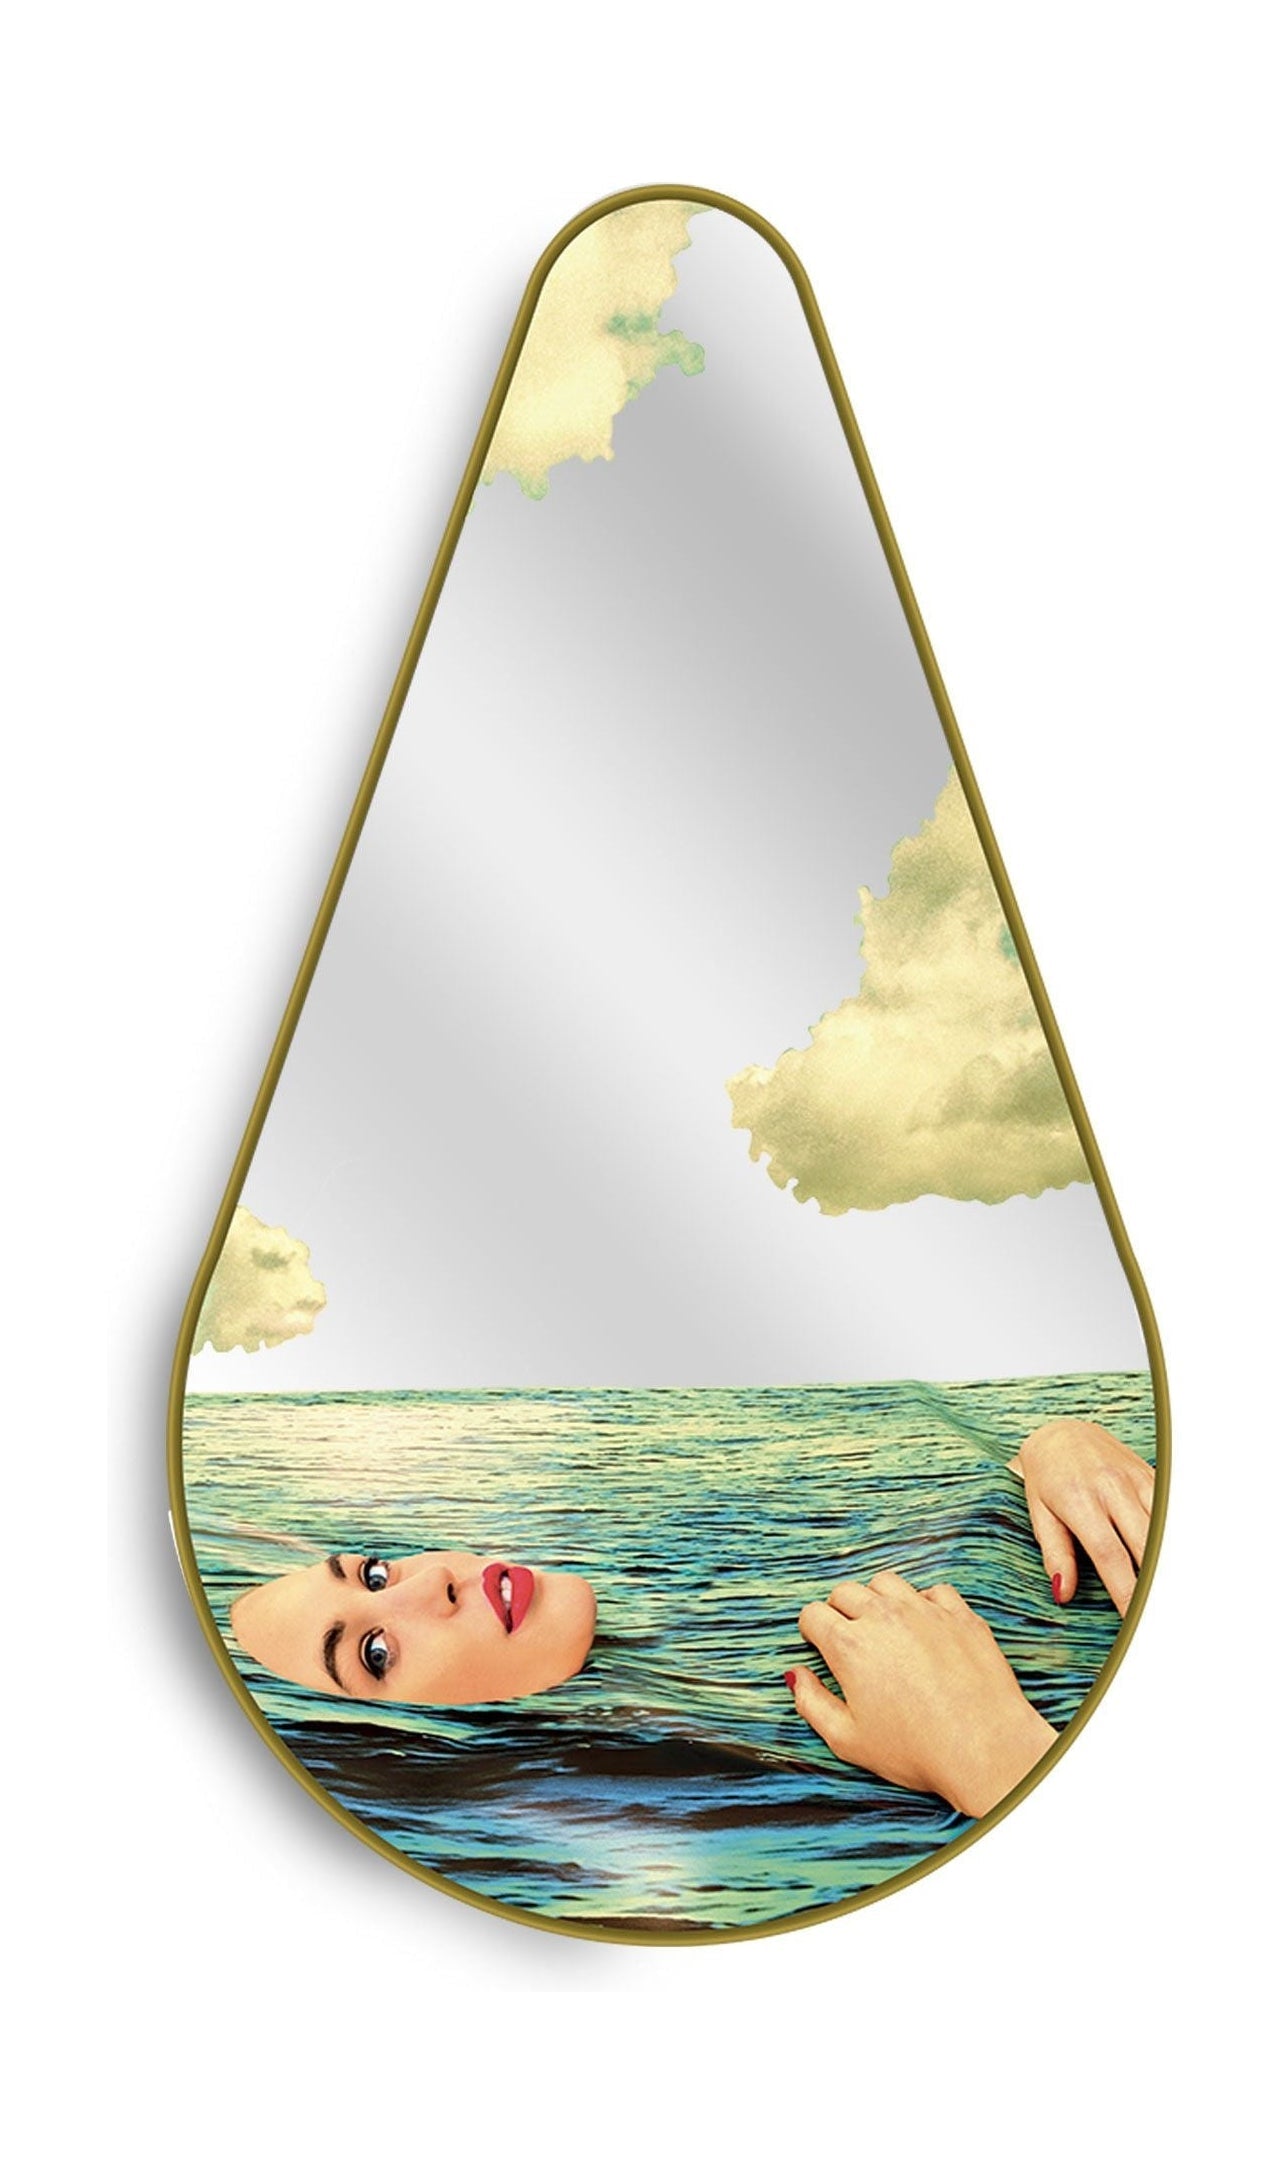 Seletti Waterpaper Mirror Gold Frame Pere, Seagirl